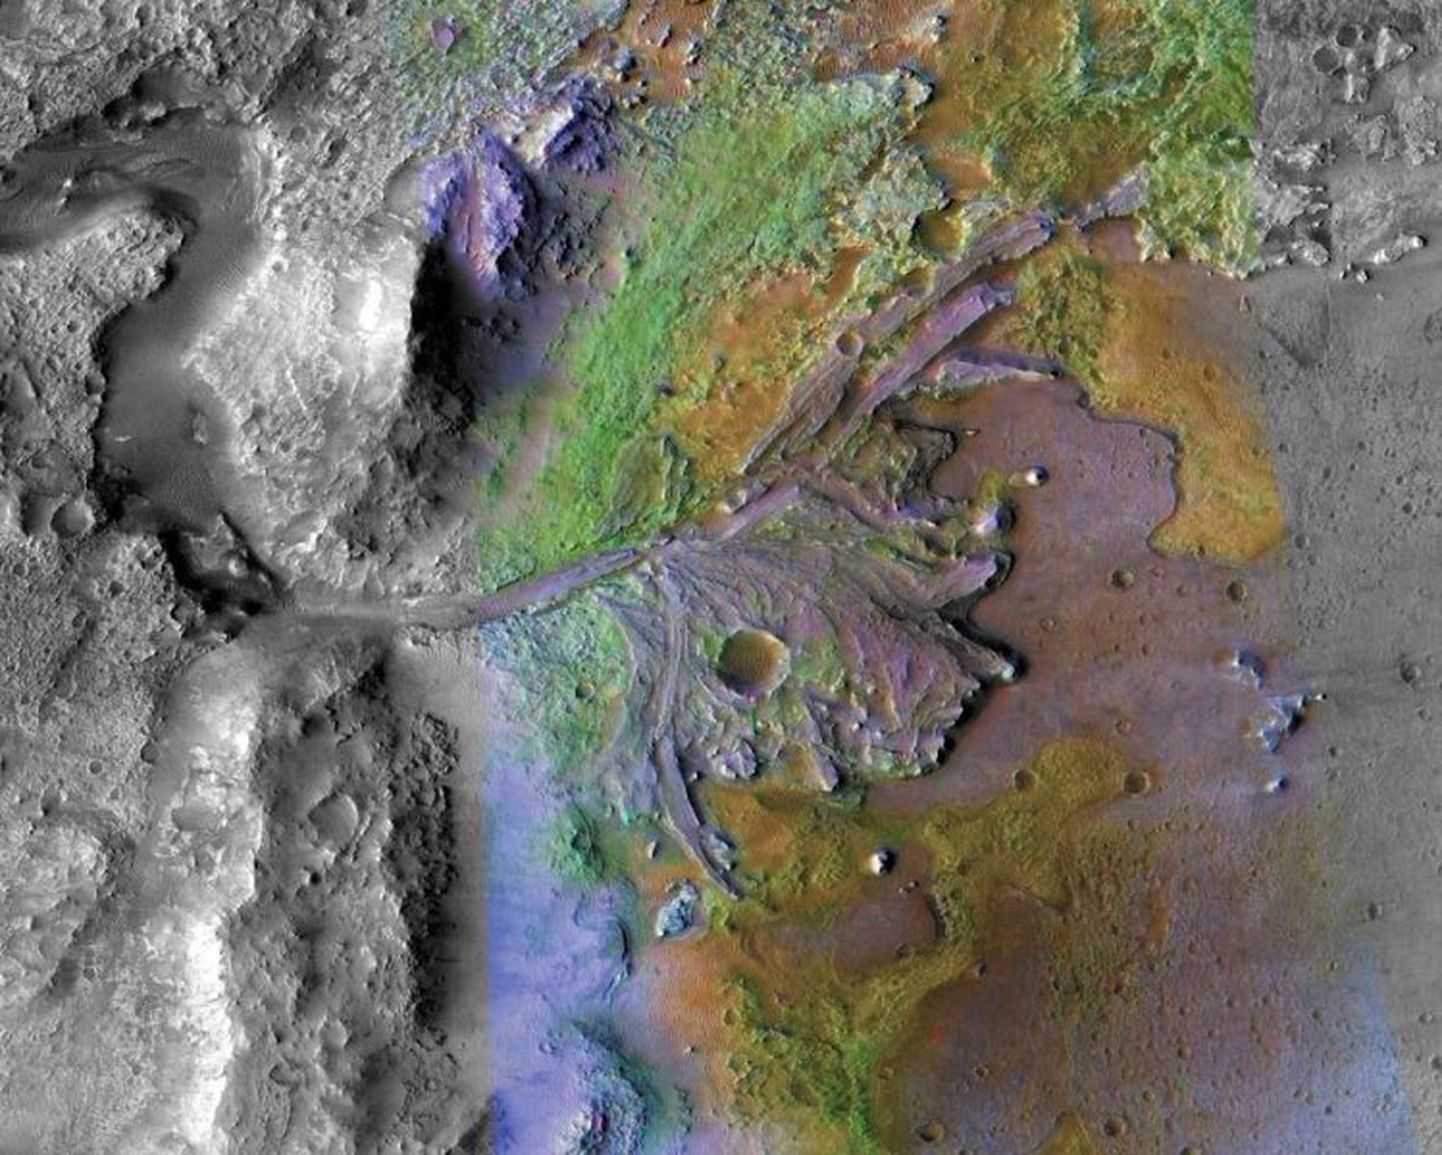 Jezero kraatri delta on märkimisväärselt heas seisukorras säilinud muistne jõesuue Marsil.